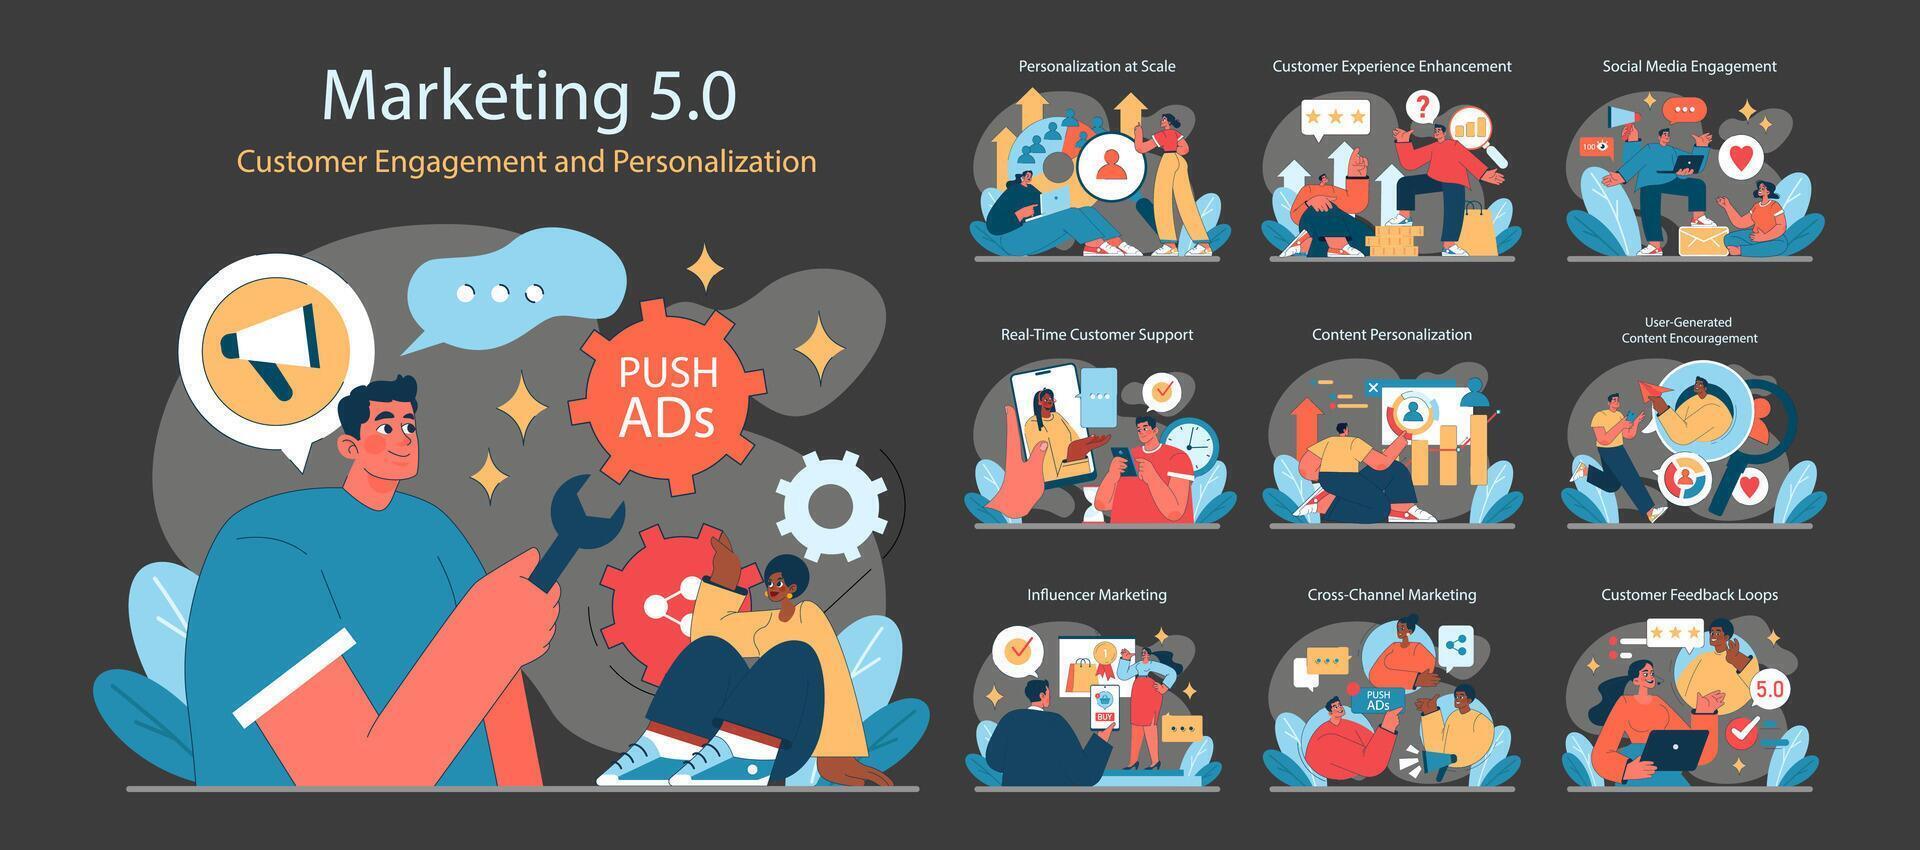 márketing 5.0 colocar. un vibrante representación de cliente compromiso y personalización vector